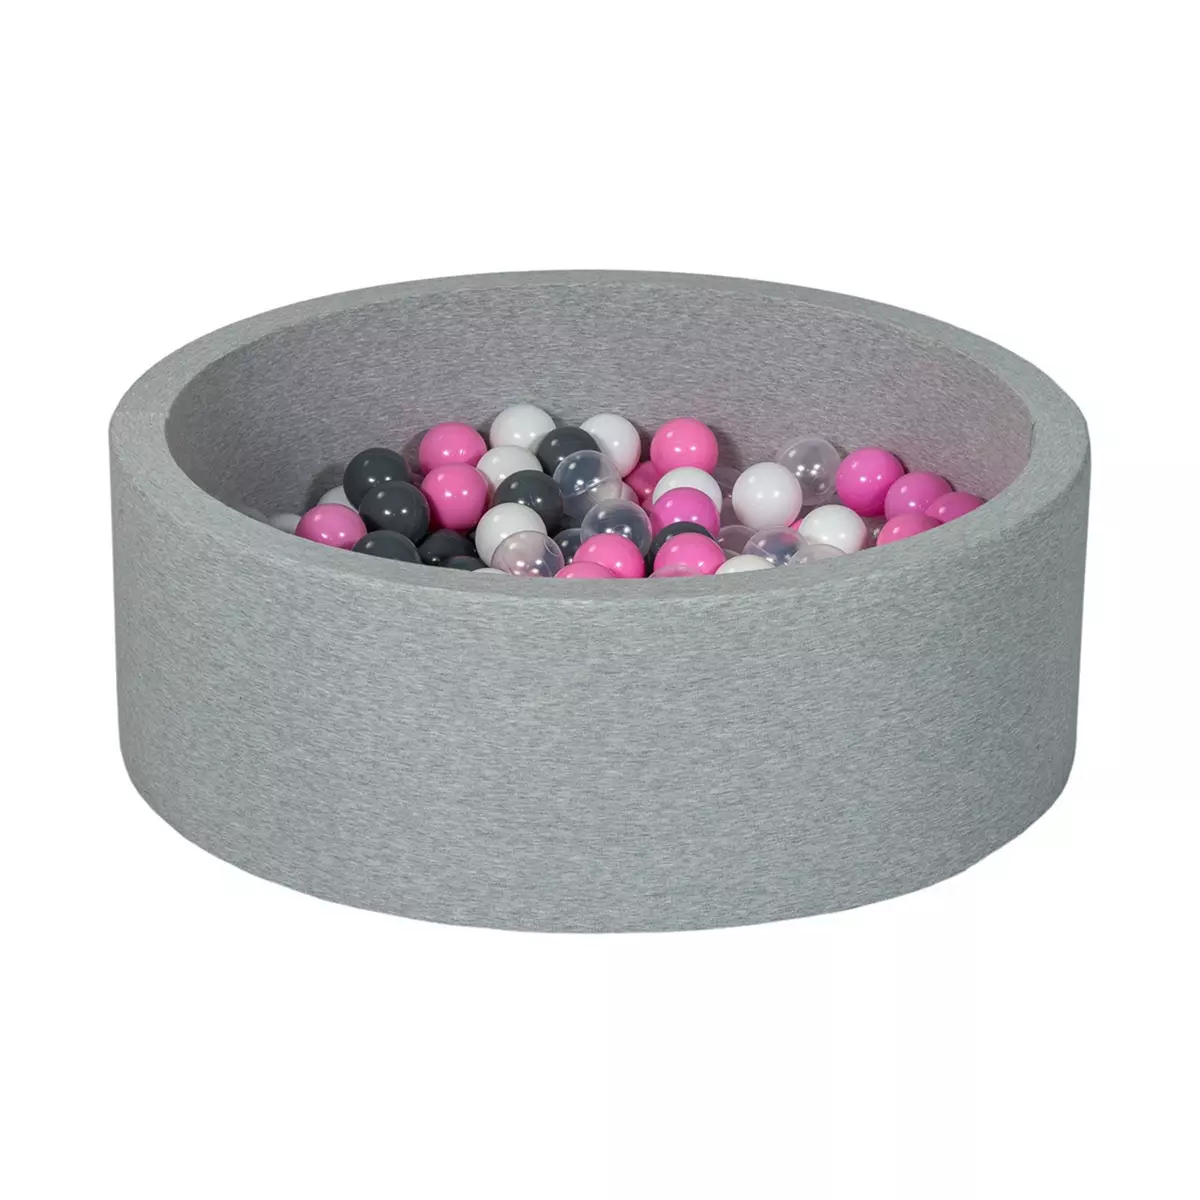  Piscine à balles Aire de jeu + 200 balles blanc, transparent, rose clair, gris